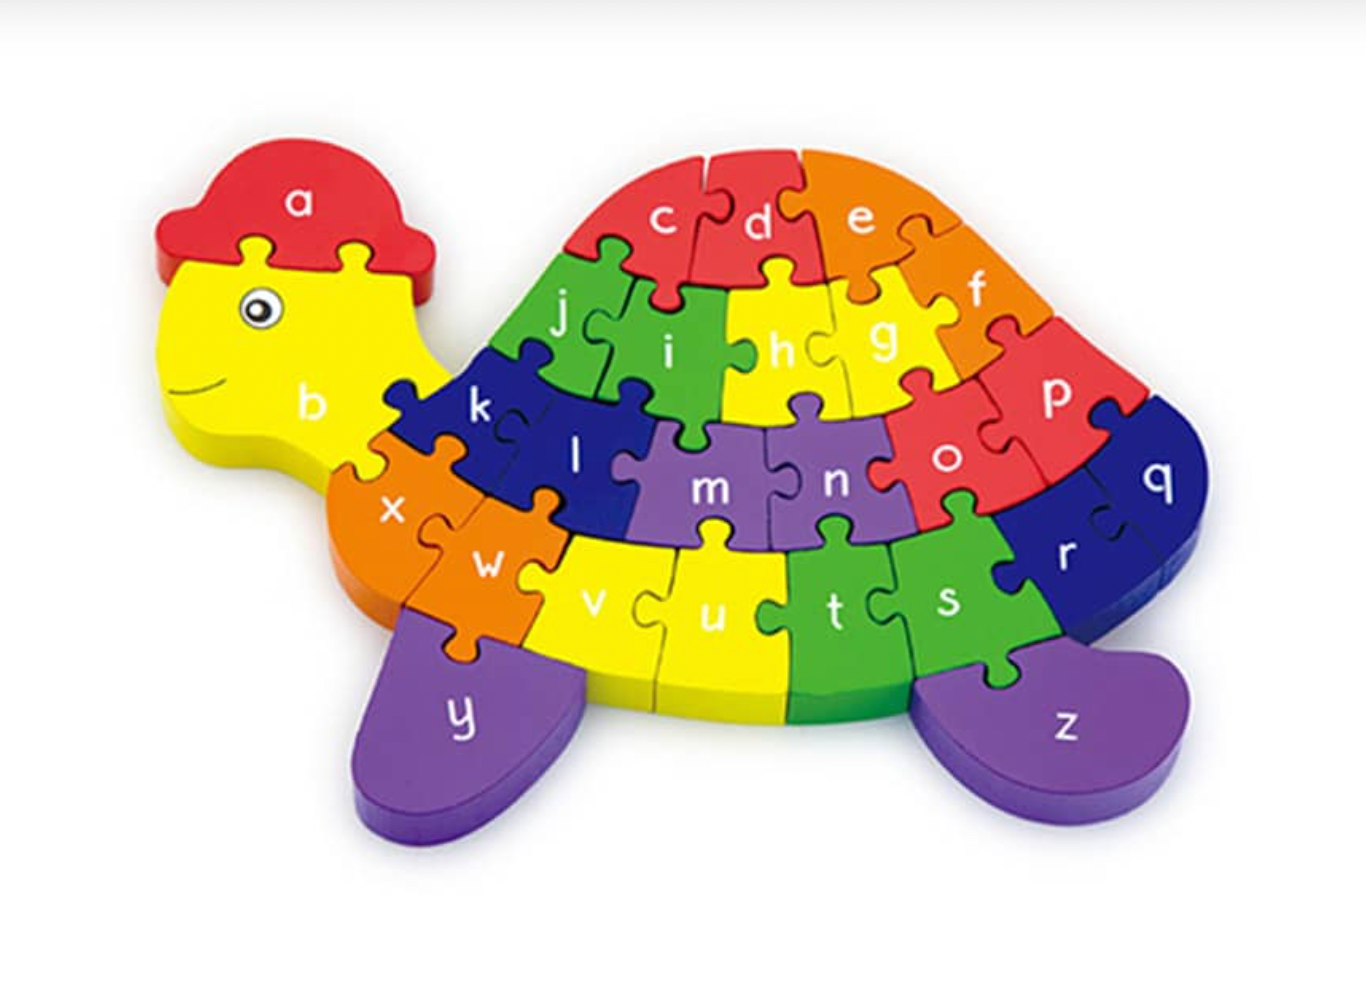 3D Puzzle Schildkröte